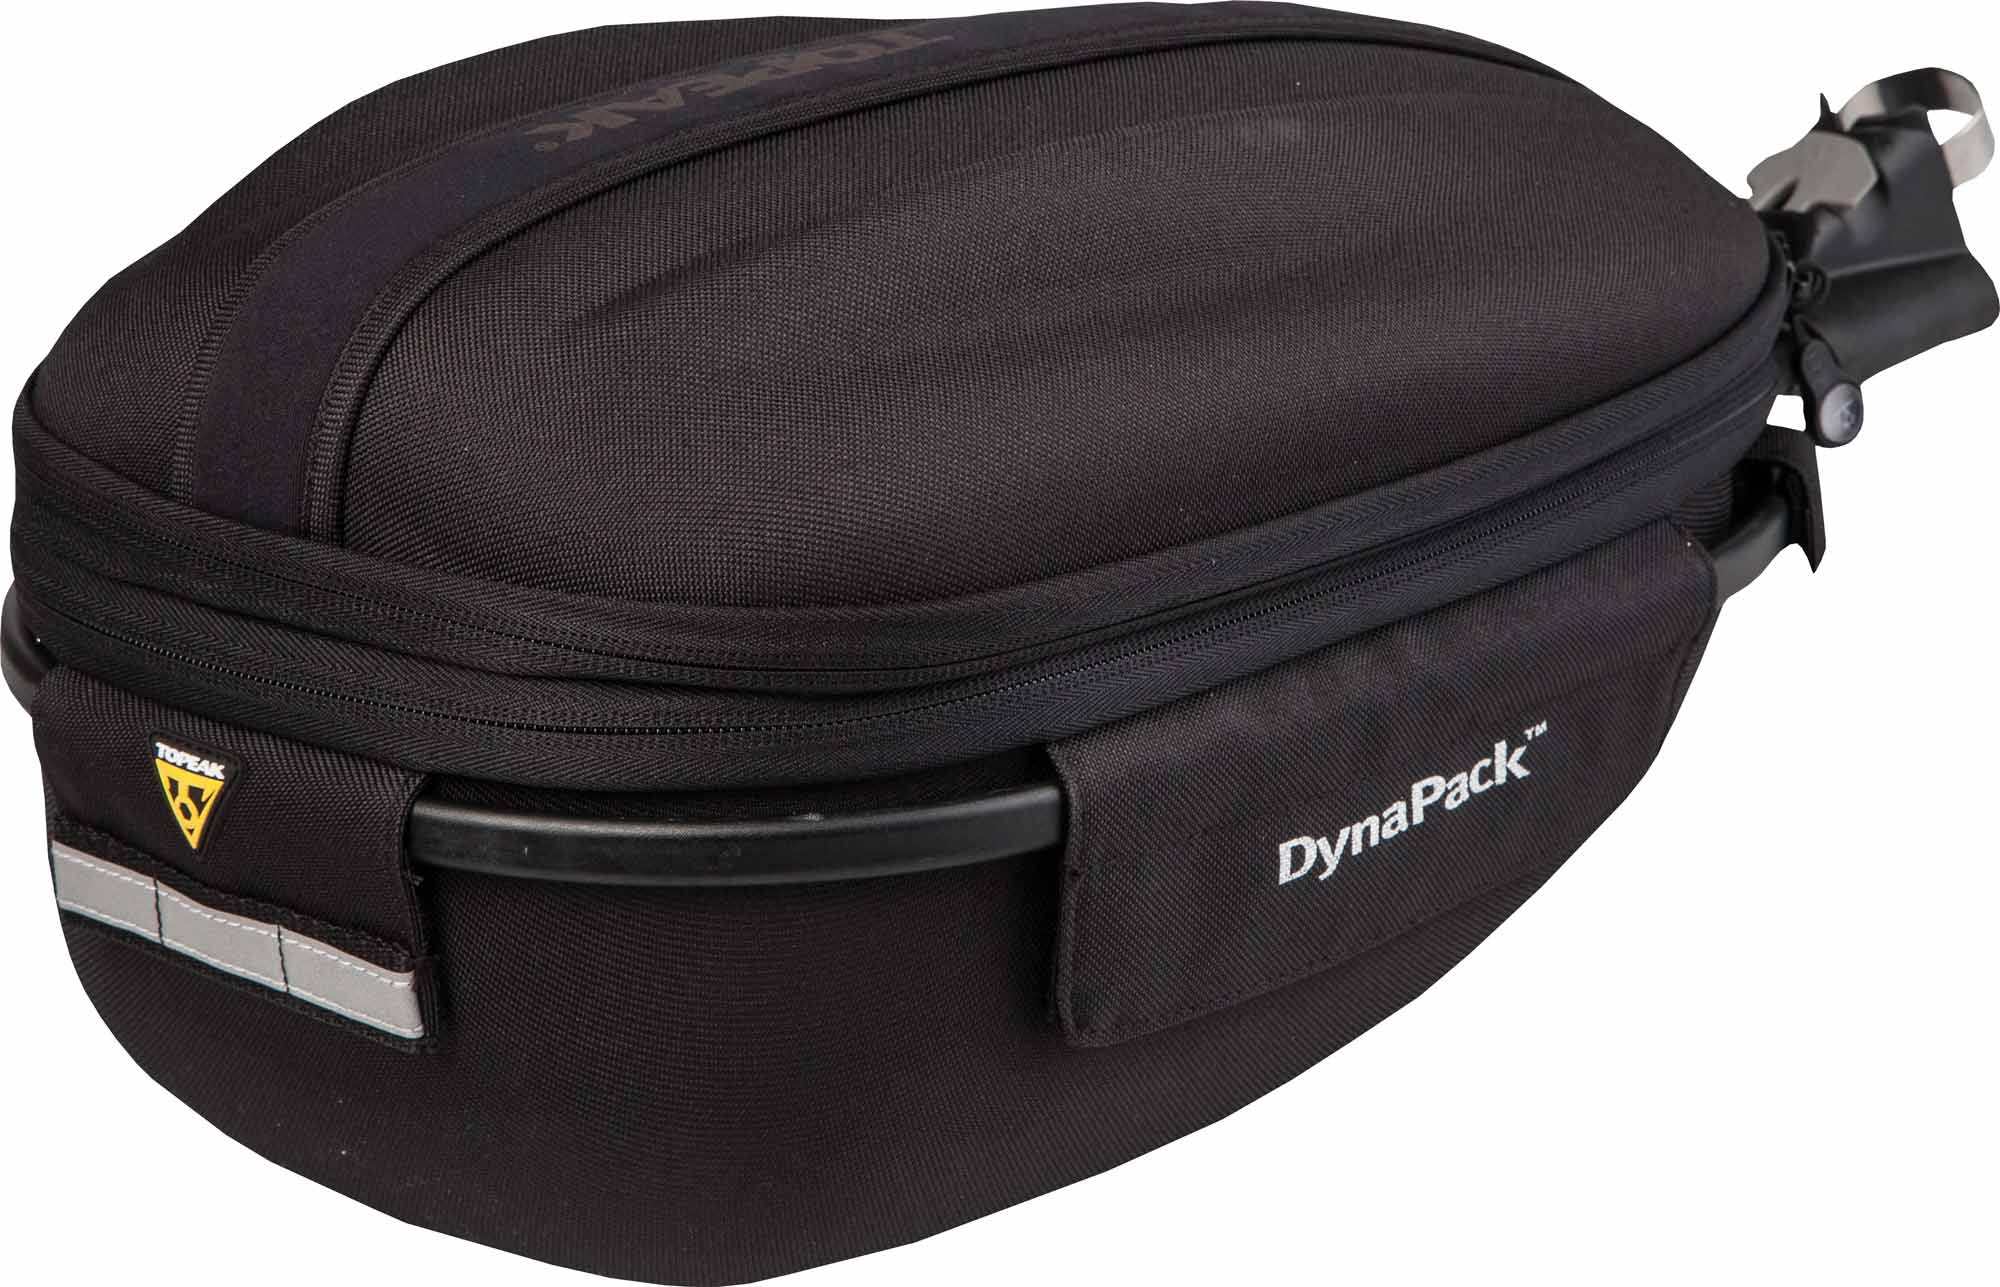 DYNAPACK DX - Bicycle bag